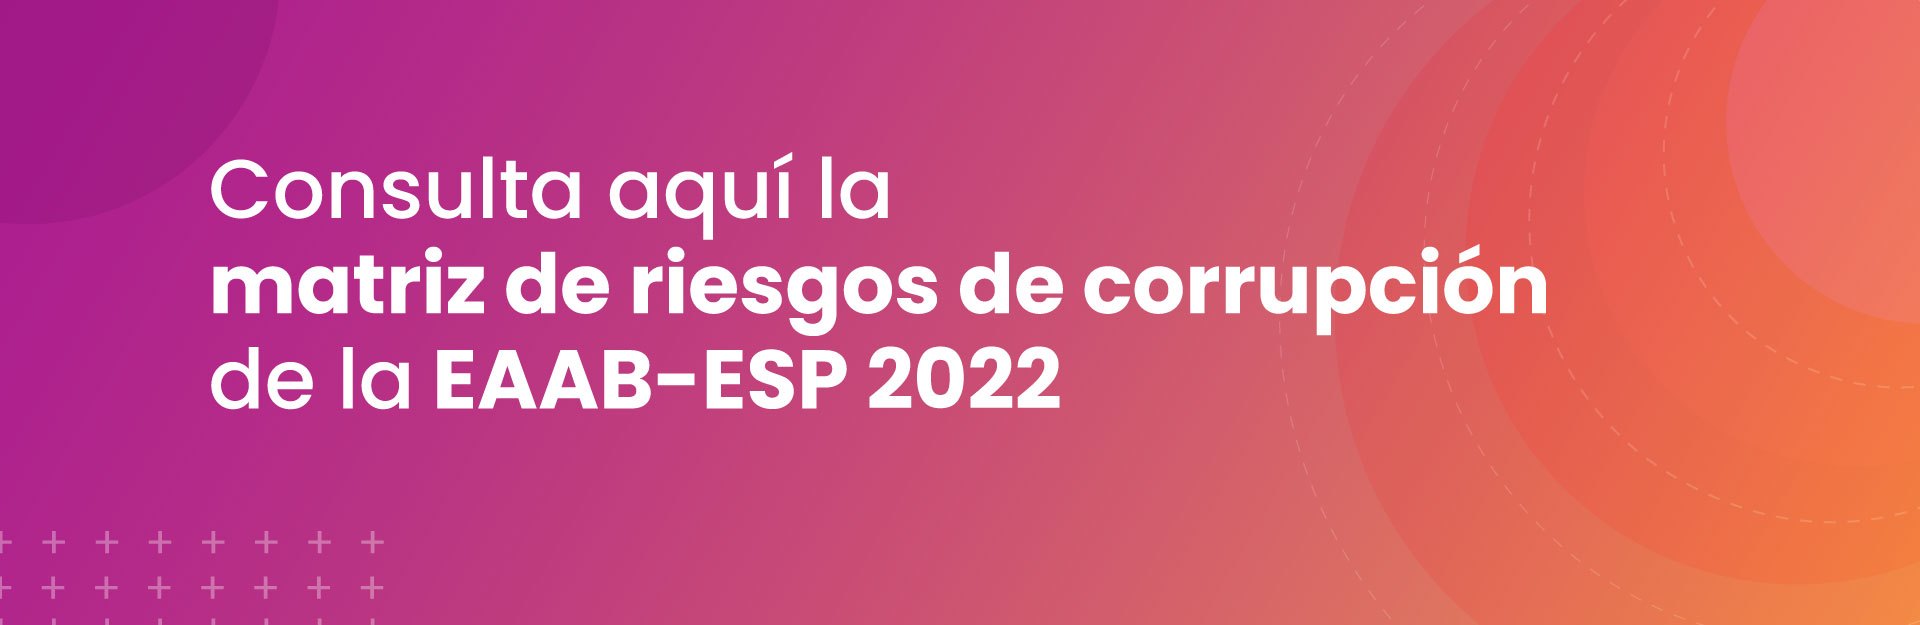 Matriz de riesgos de corrupción EAAB-ESP 2022